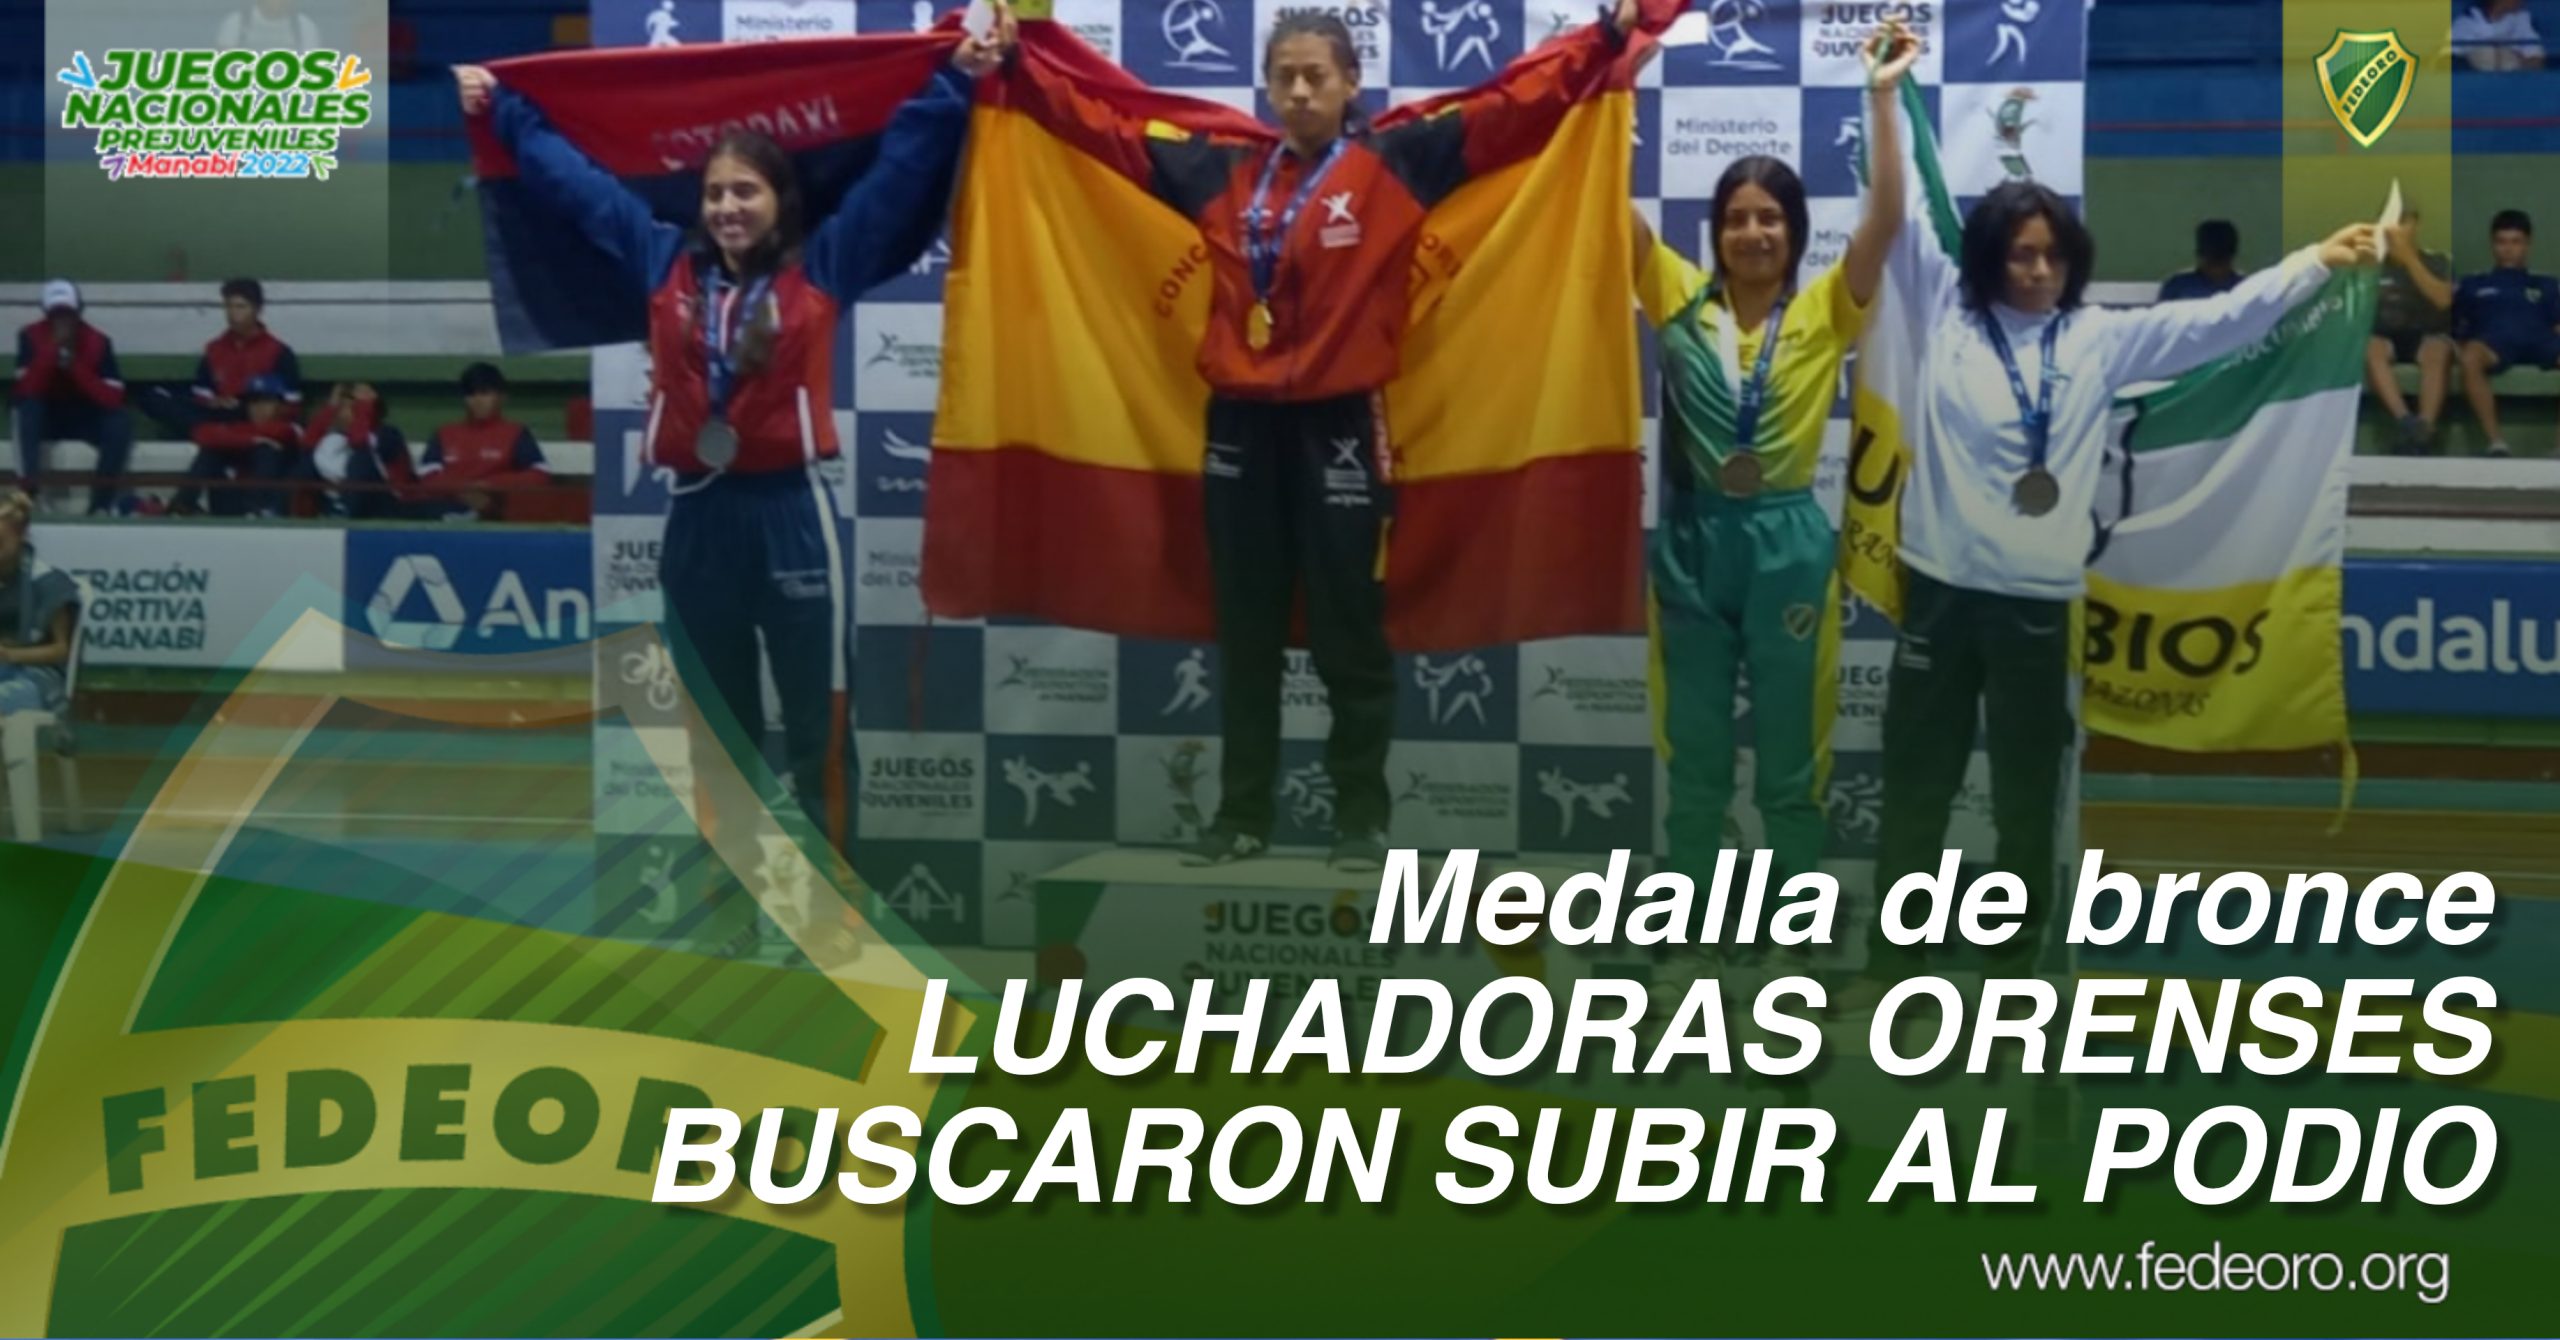 Medalla de bronce<br>LUCHADORAS ORENSES BUSCARON SUBIR AL PODIO